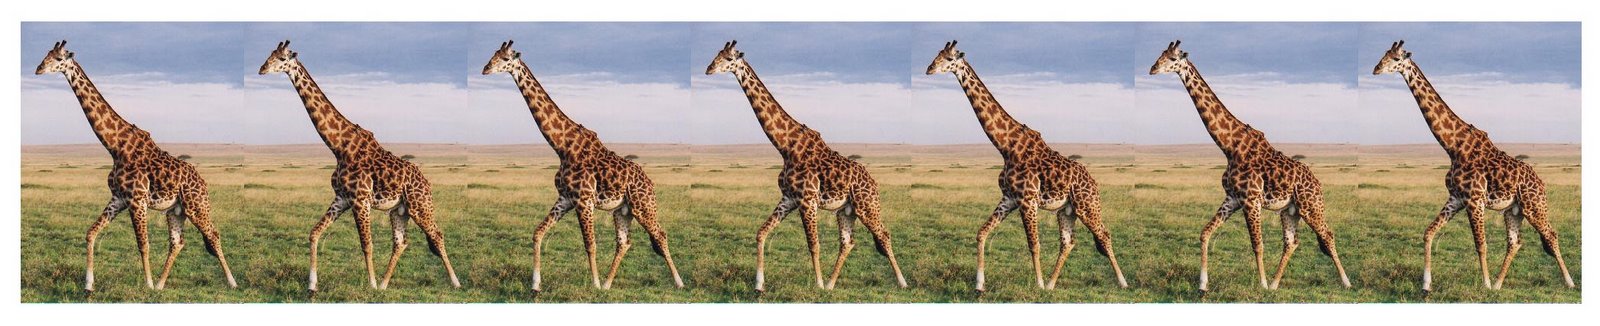 [Giraffe.jpg]